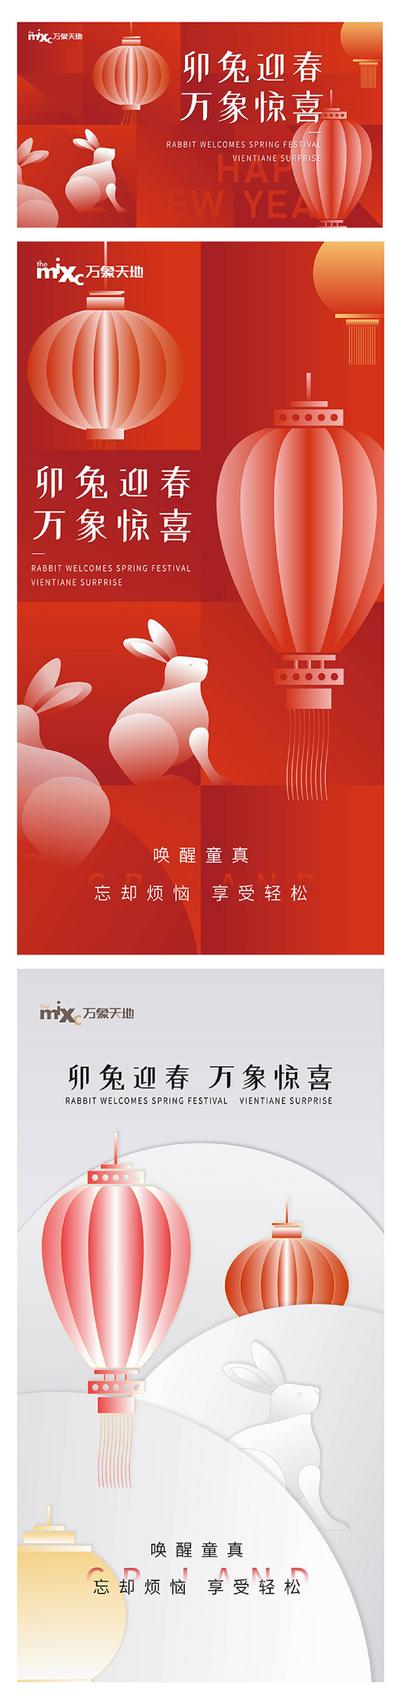 南门网 广告 海报 新年 春节 兔年 元旦 节日 系列 插画